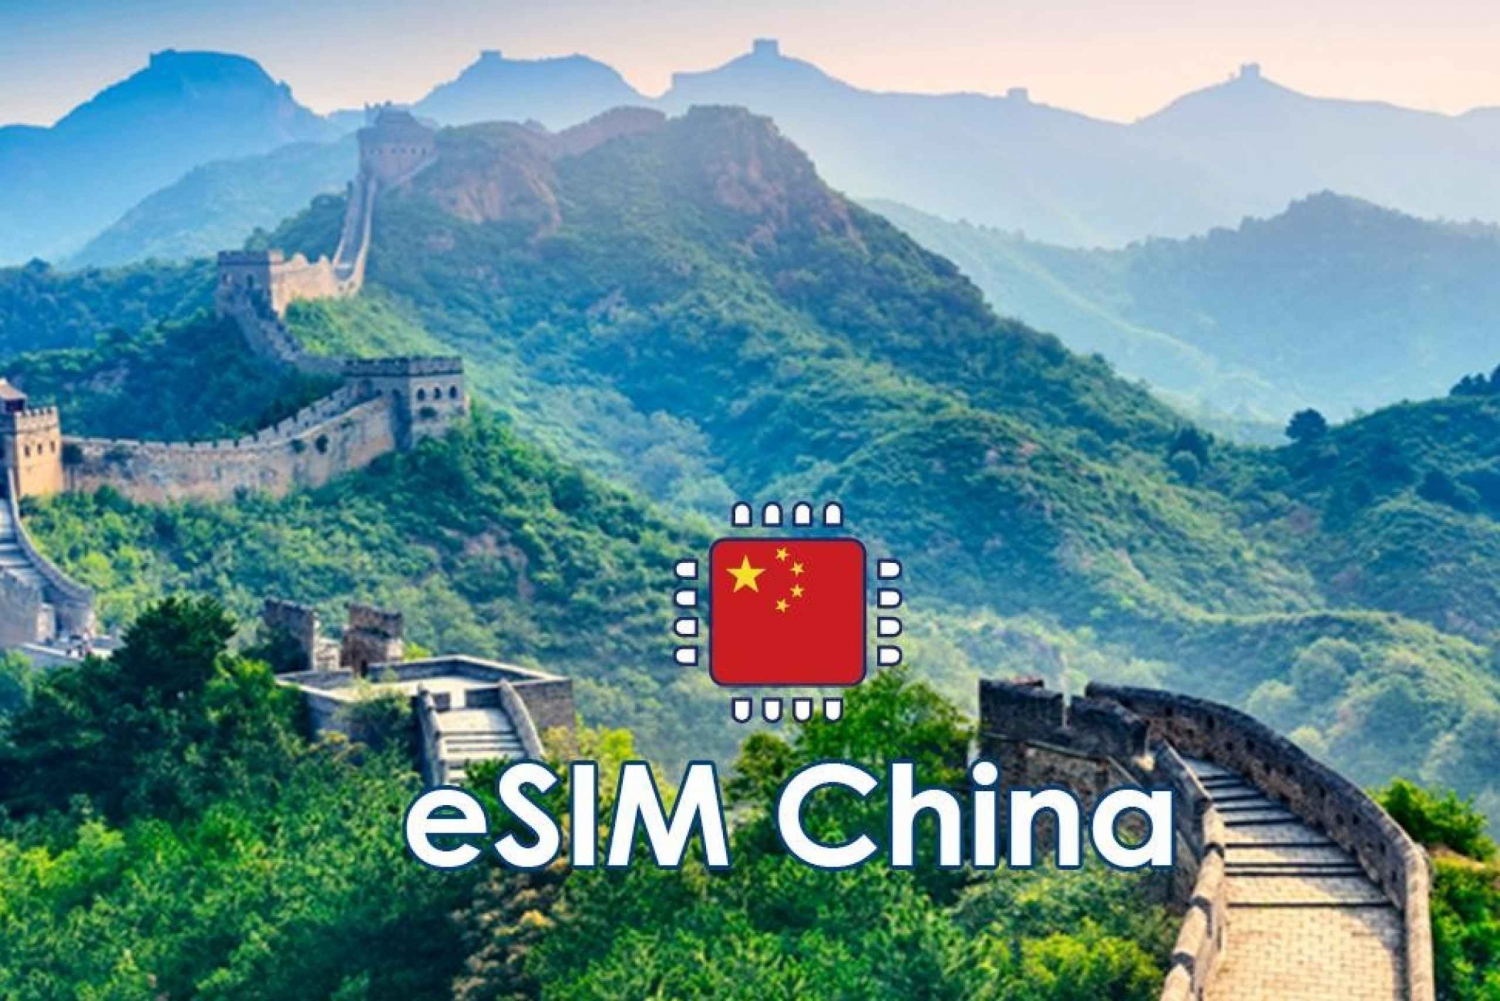 China: Plano de dados móveis eSIM - 10 GB